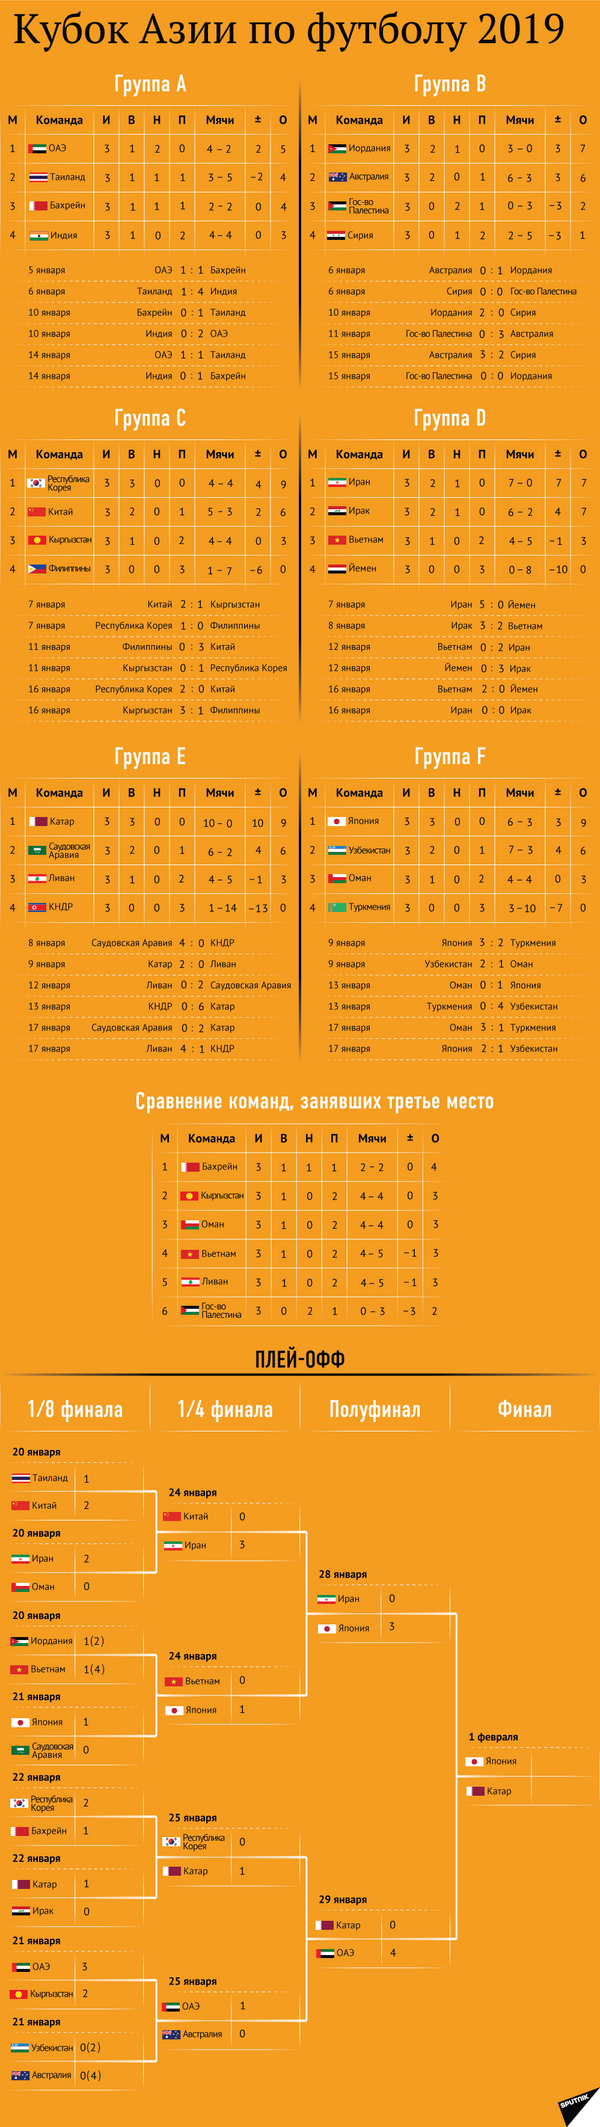 Расписание матчей Кубка Азии по футболу — инфографика - Sputnik Кыргызстан